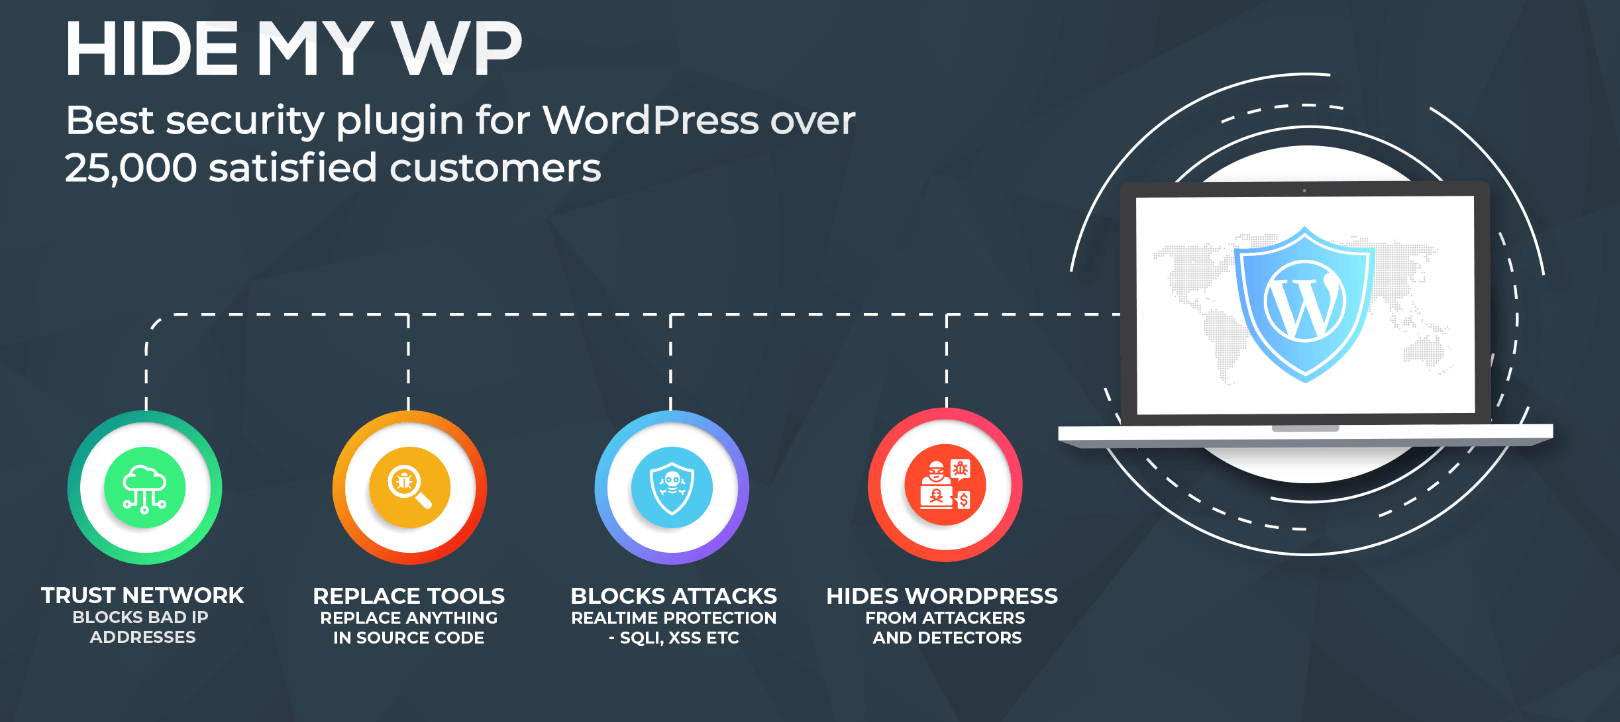 hide my wp wordpress security plugin - Secure WordPress Websites